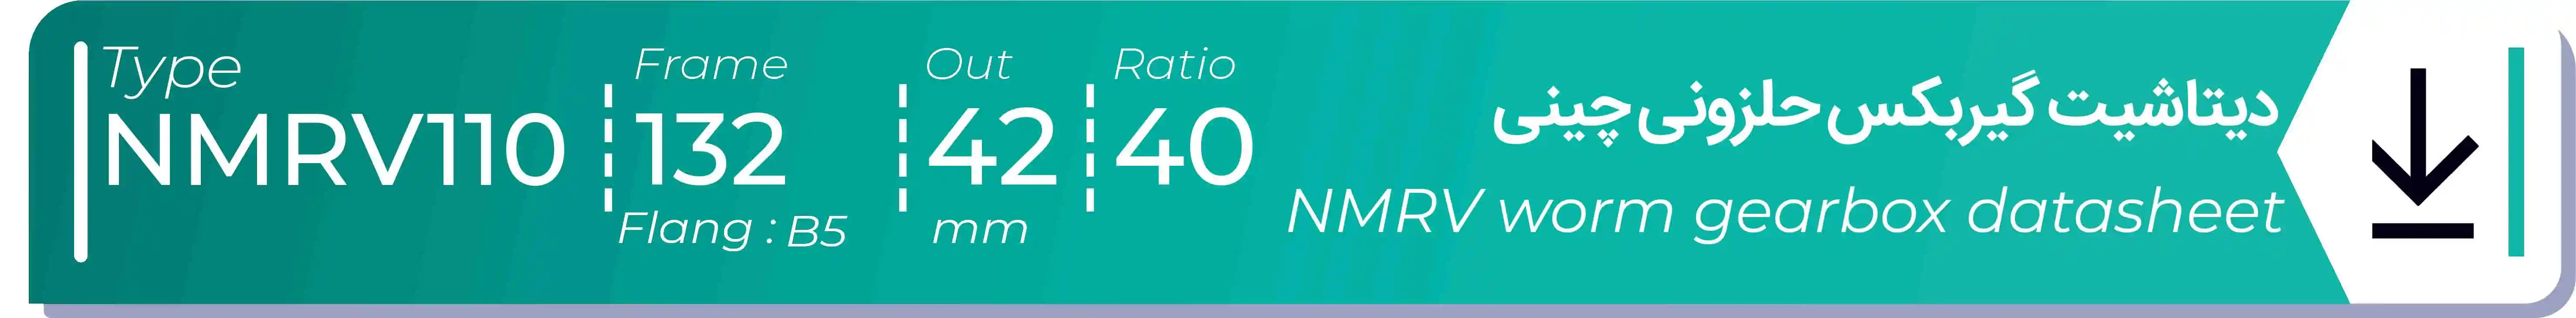  دیتاشیت و مشخصات فنی گیربکس حلزونی چینی   NMRV110  -  با خروجی 42- میلی متر و نسبت40 و فریم 132